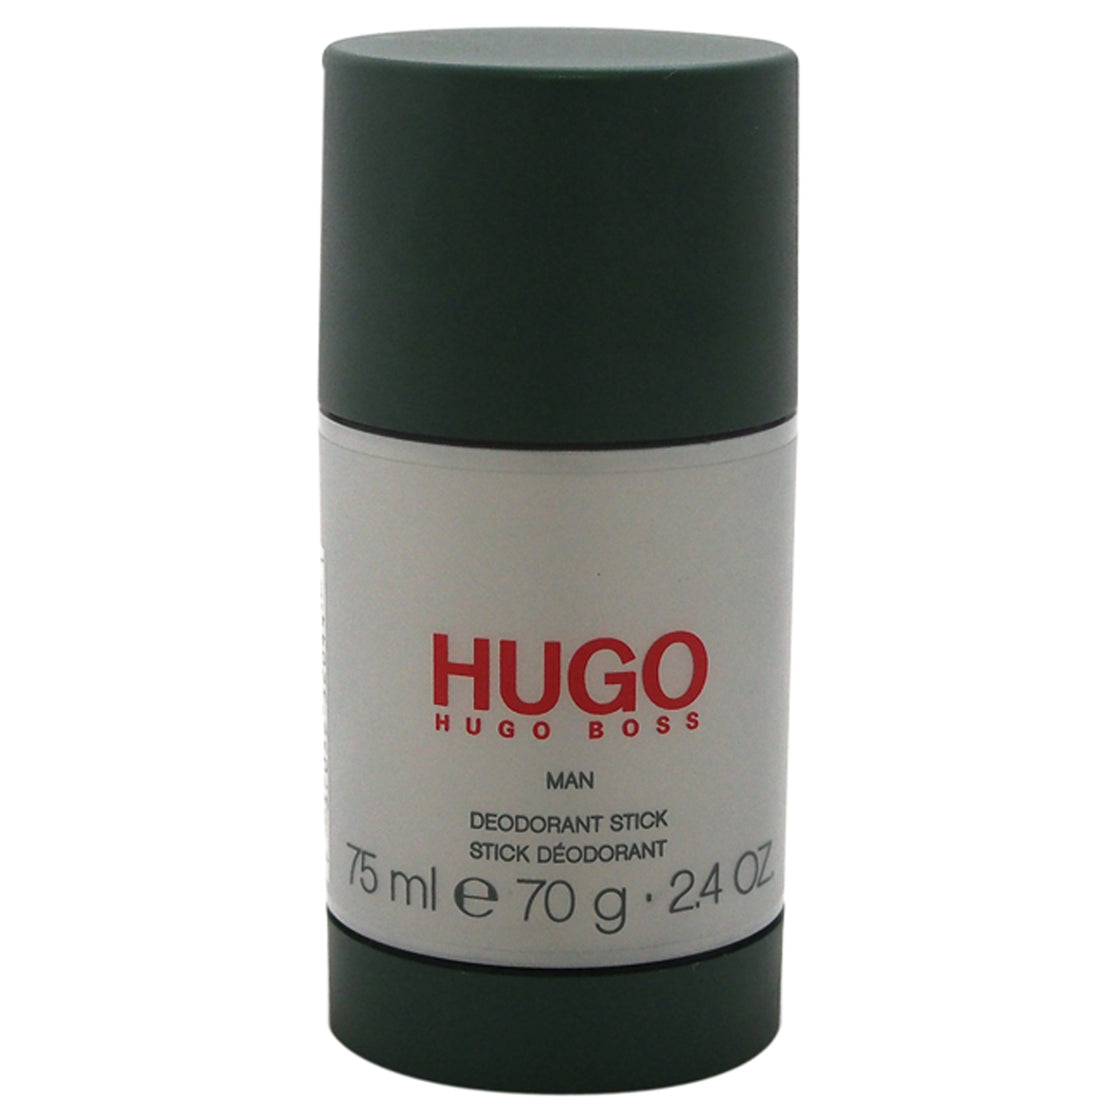 Hugo by Hugo Boss for Men - 2.4 oz Deodorant Stick